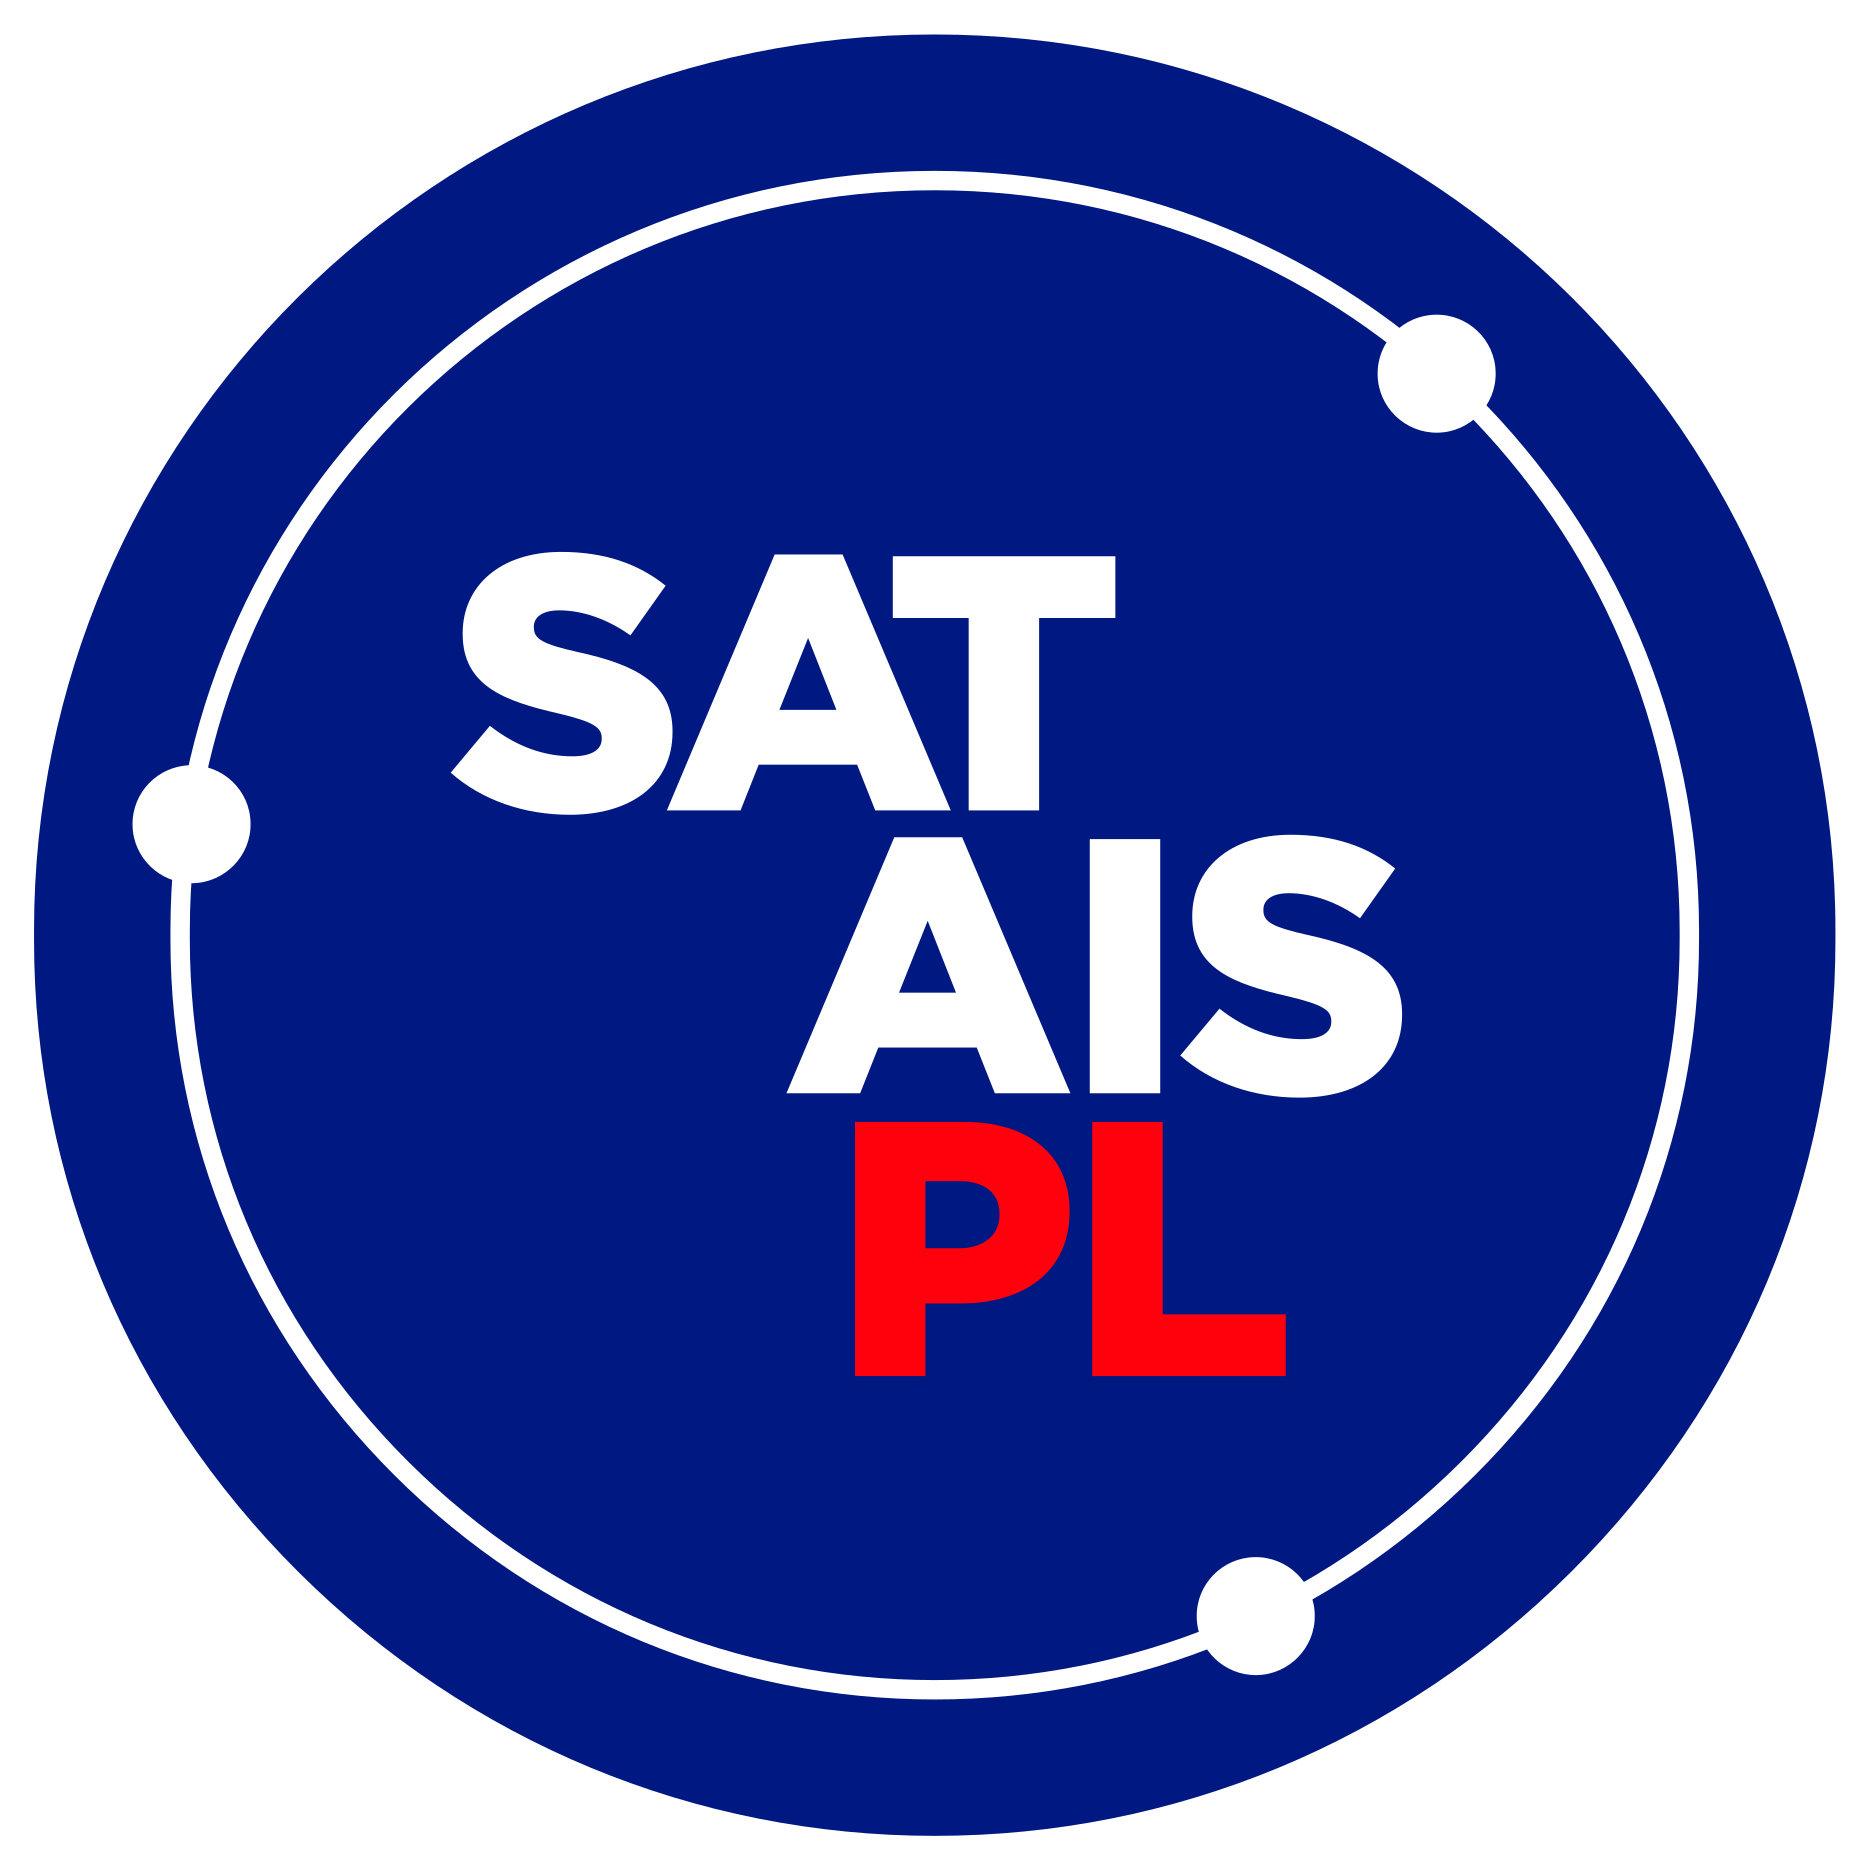 POL-SAT-AIS Phase 0